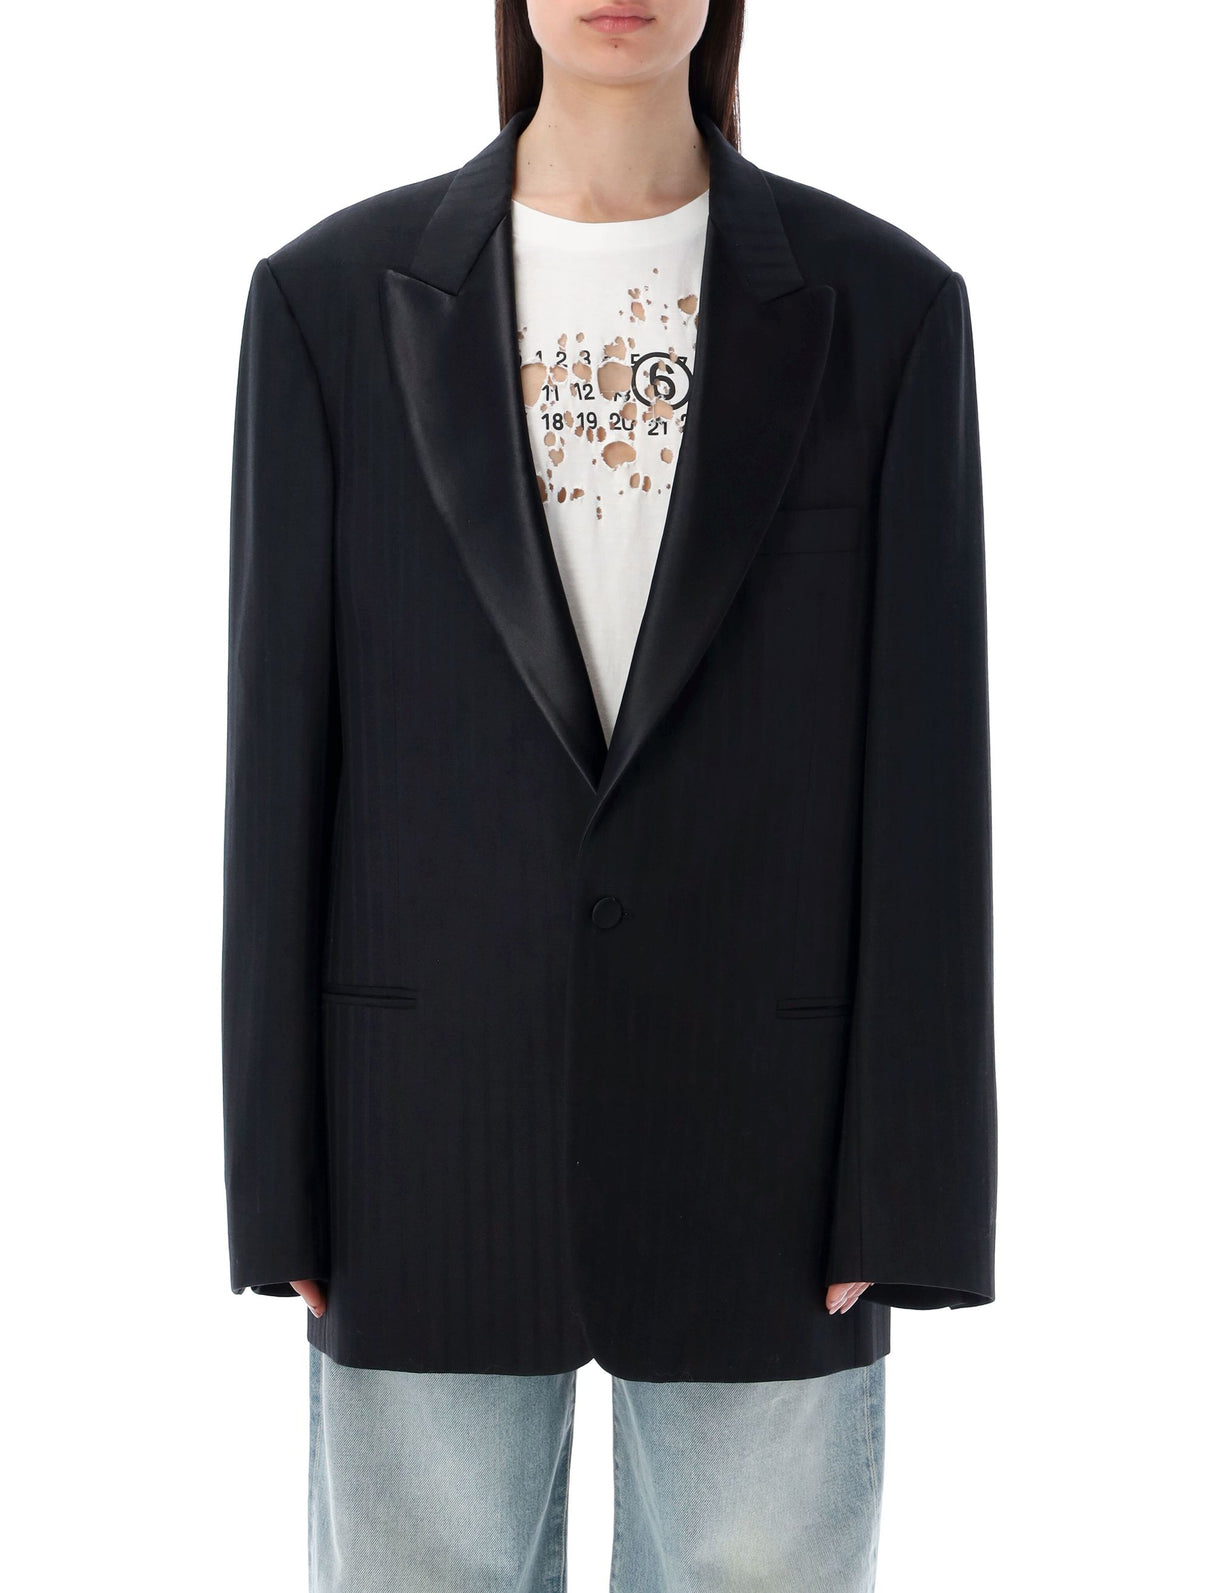 Áo blazer len đen - Cổ cánh, hoa văn sọc tông đồng, cỡ quá khổ